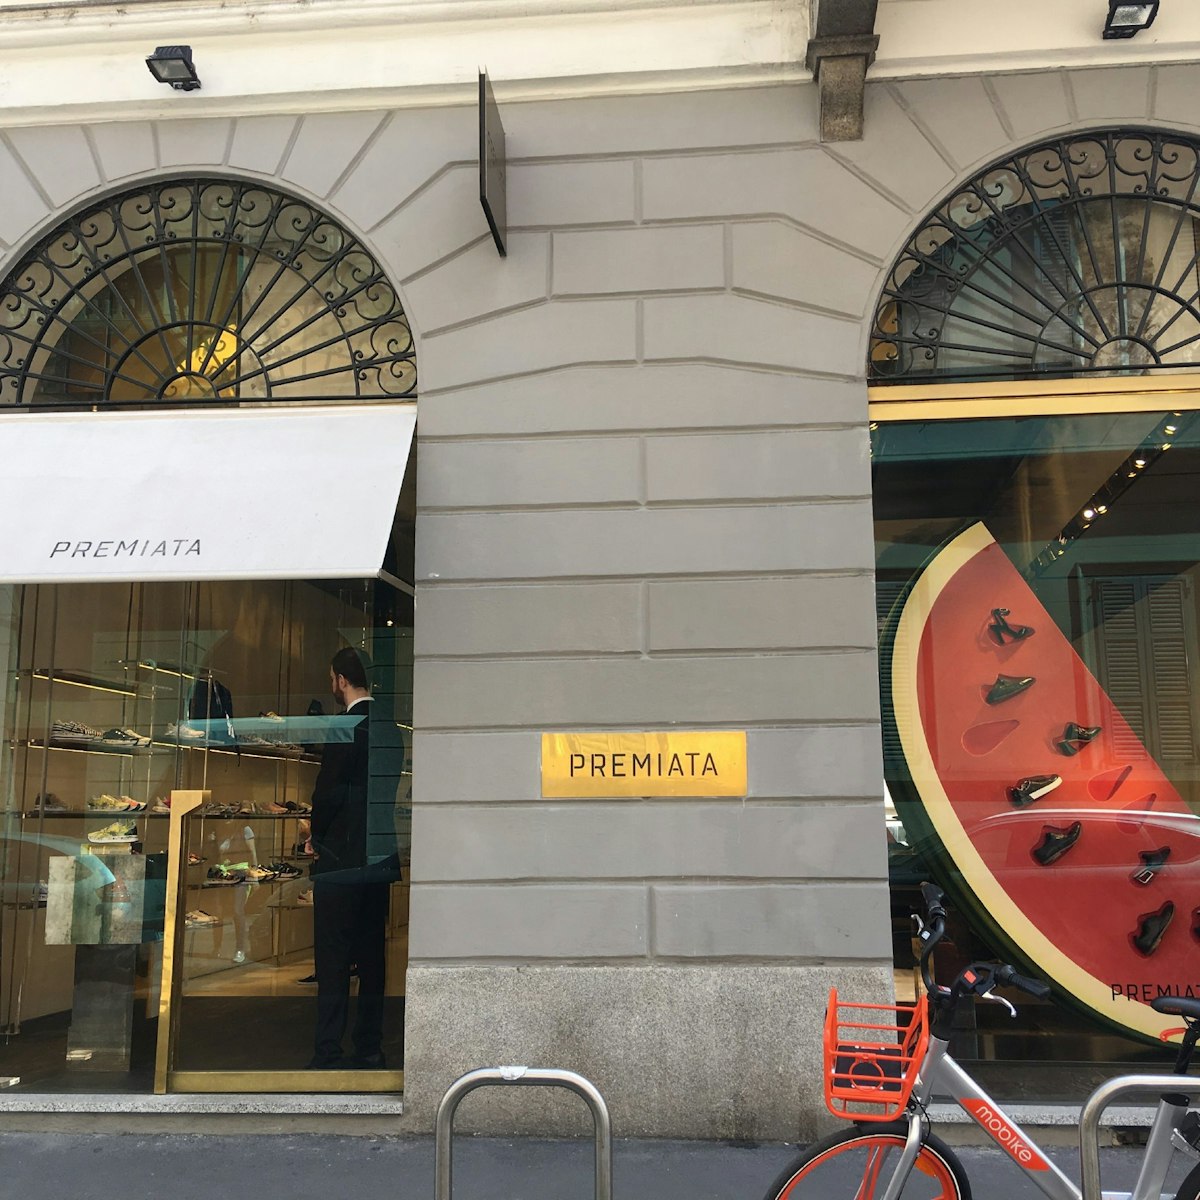 The Premiata shop exterior.